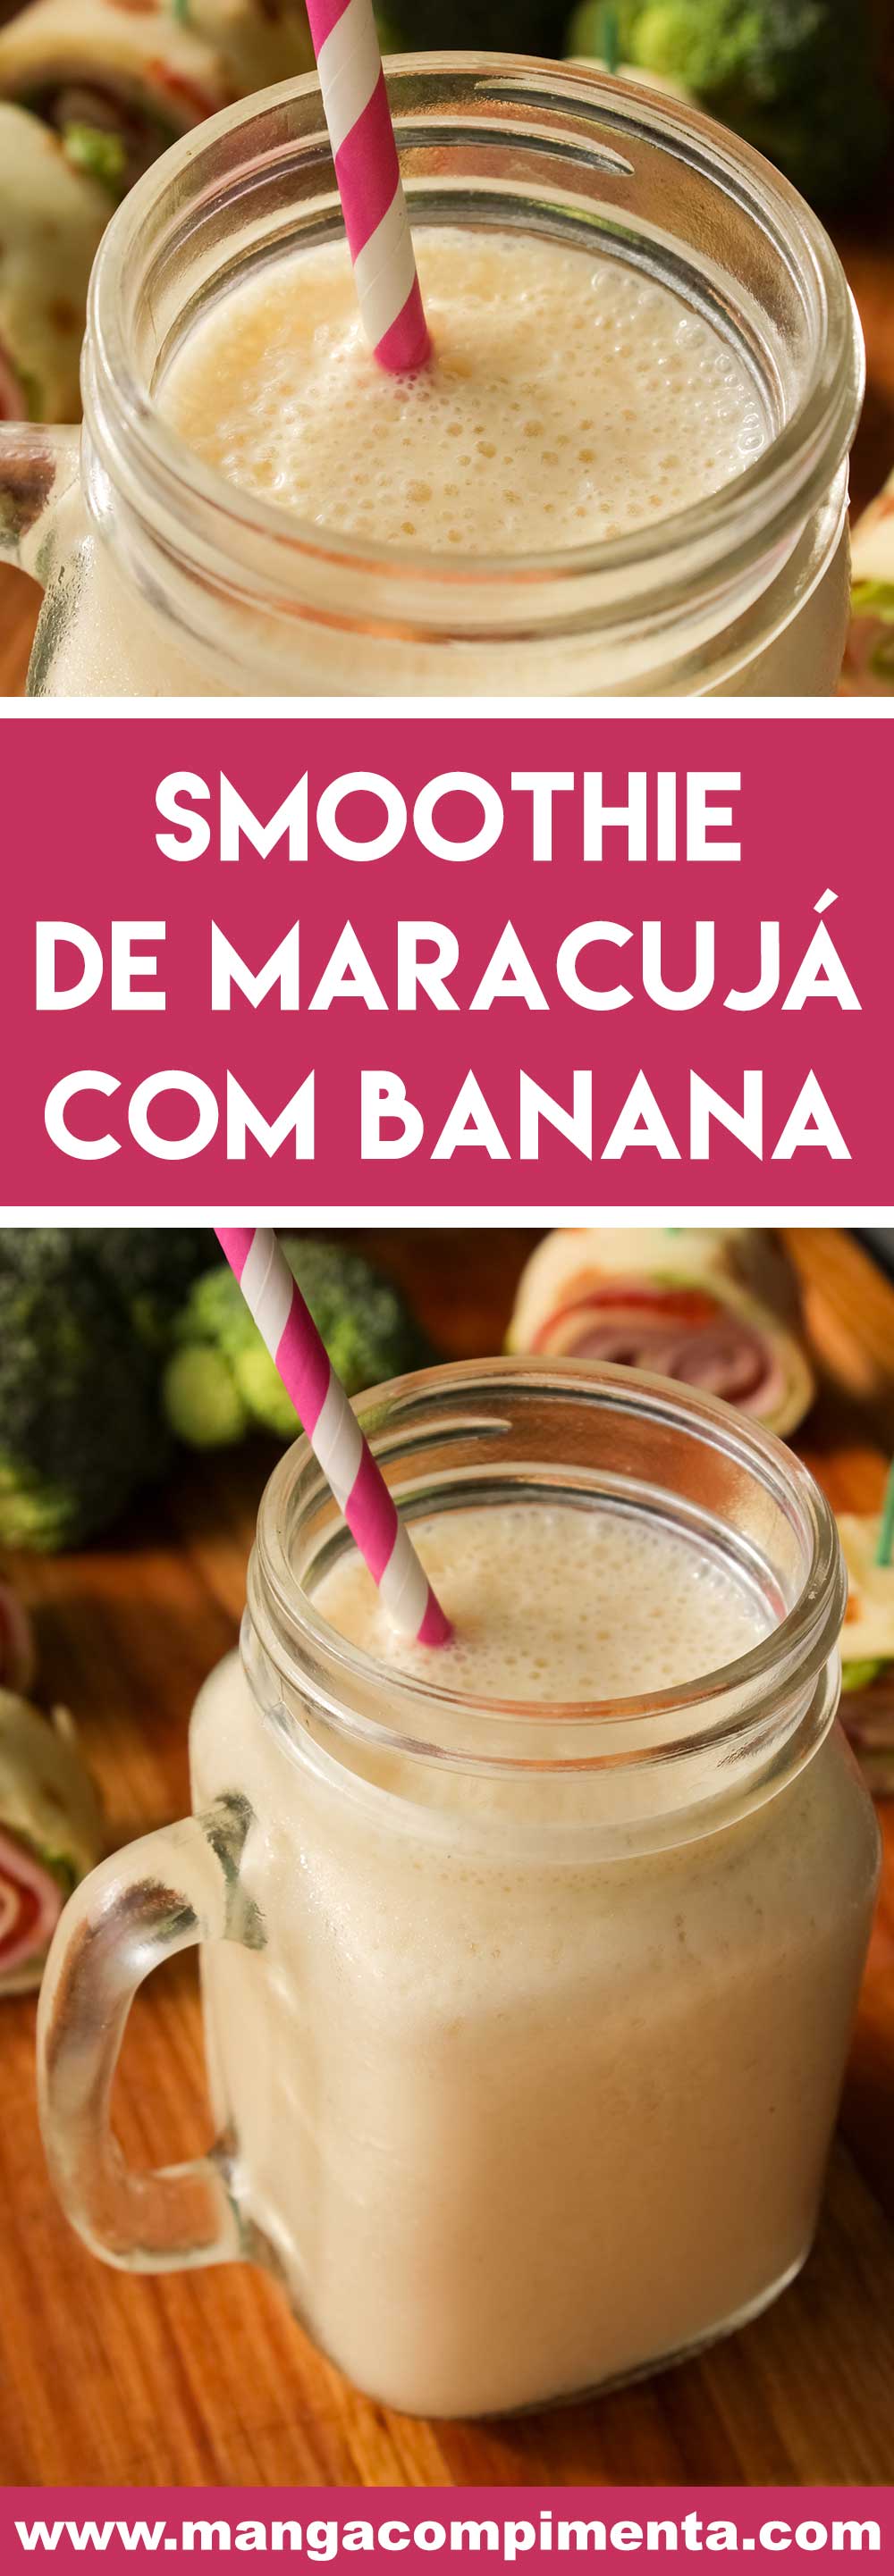 Receita de Smoothie de Maracujá com Banana - prepare essa bebida geladinha para começar o dia!